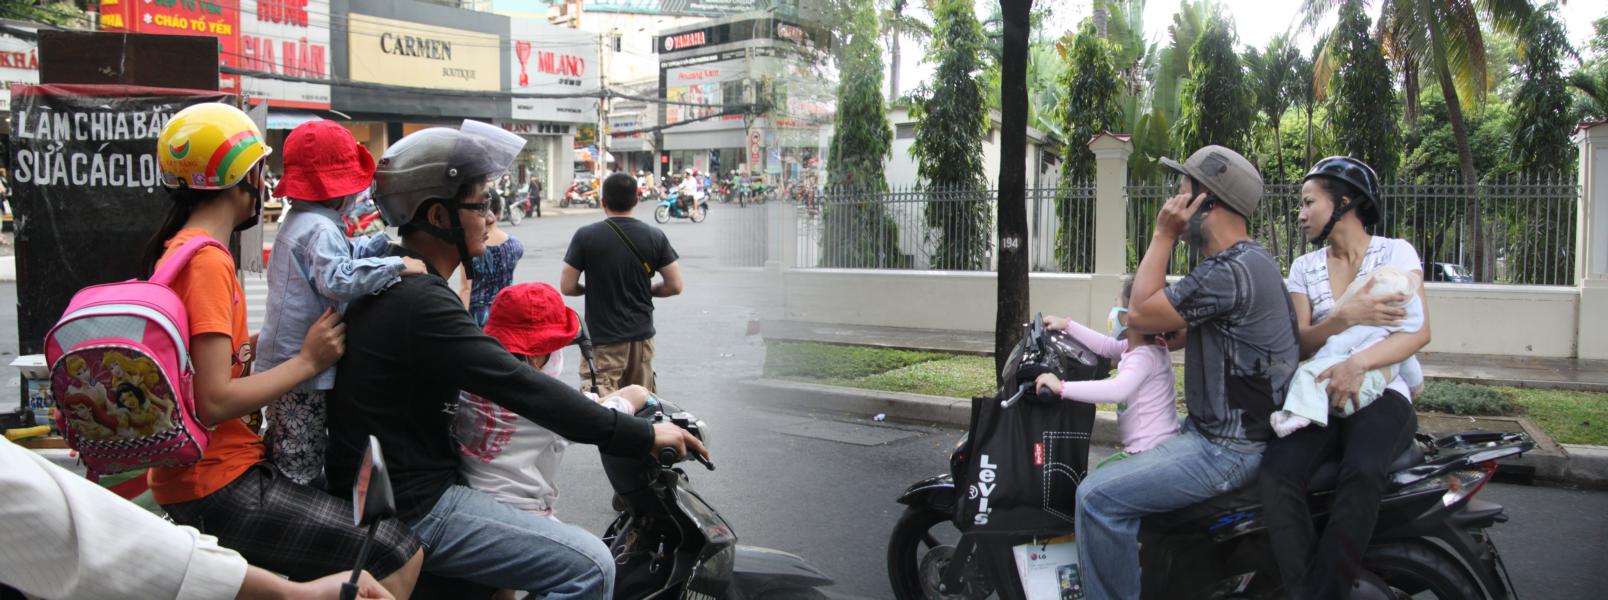 Ein Moped kann eine ganze Familie transportieren. Dabei spielt das Alter der Kinder keine Rolle.